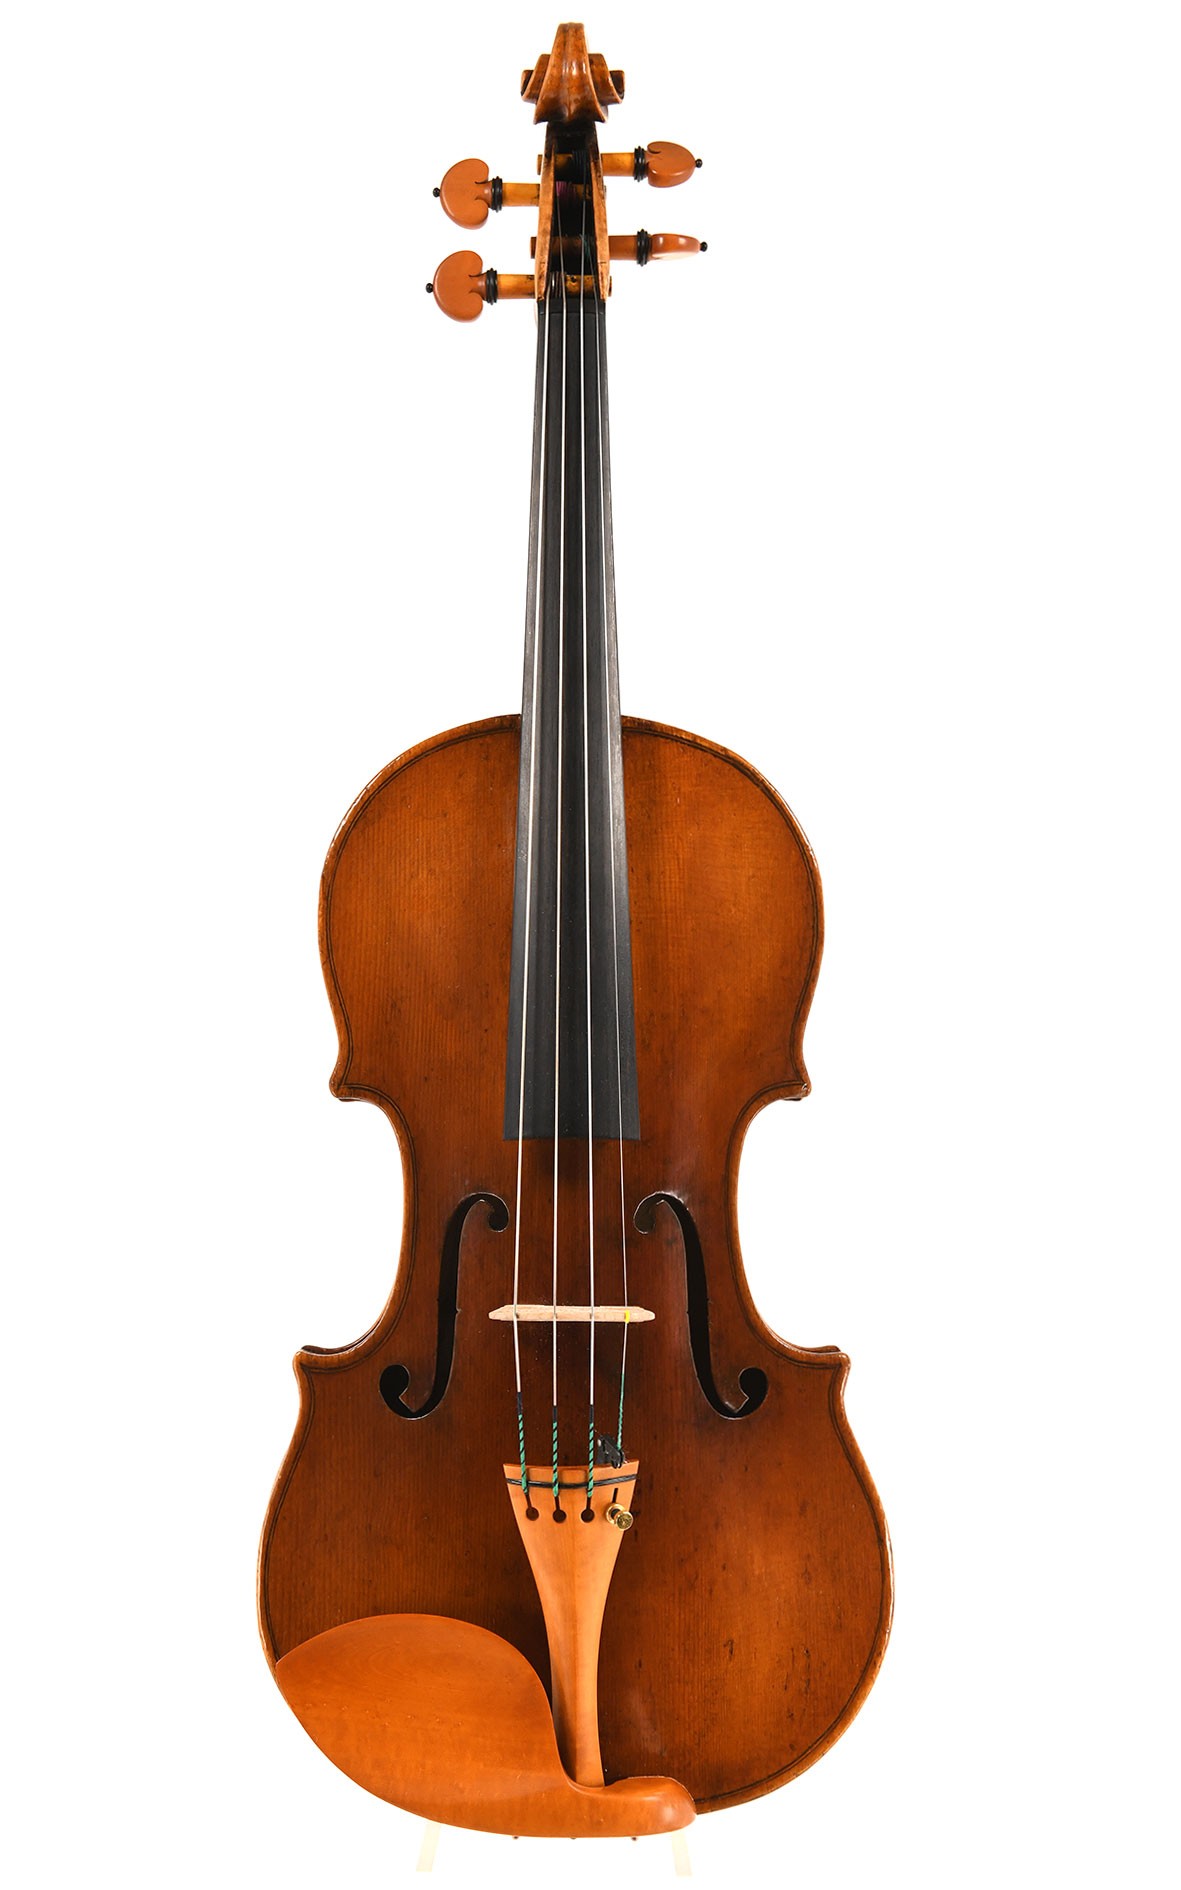 Giuseppe Gagliano : violon italien de Naples vers 1780